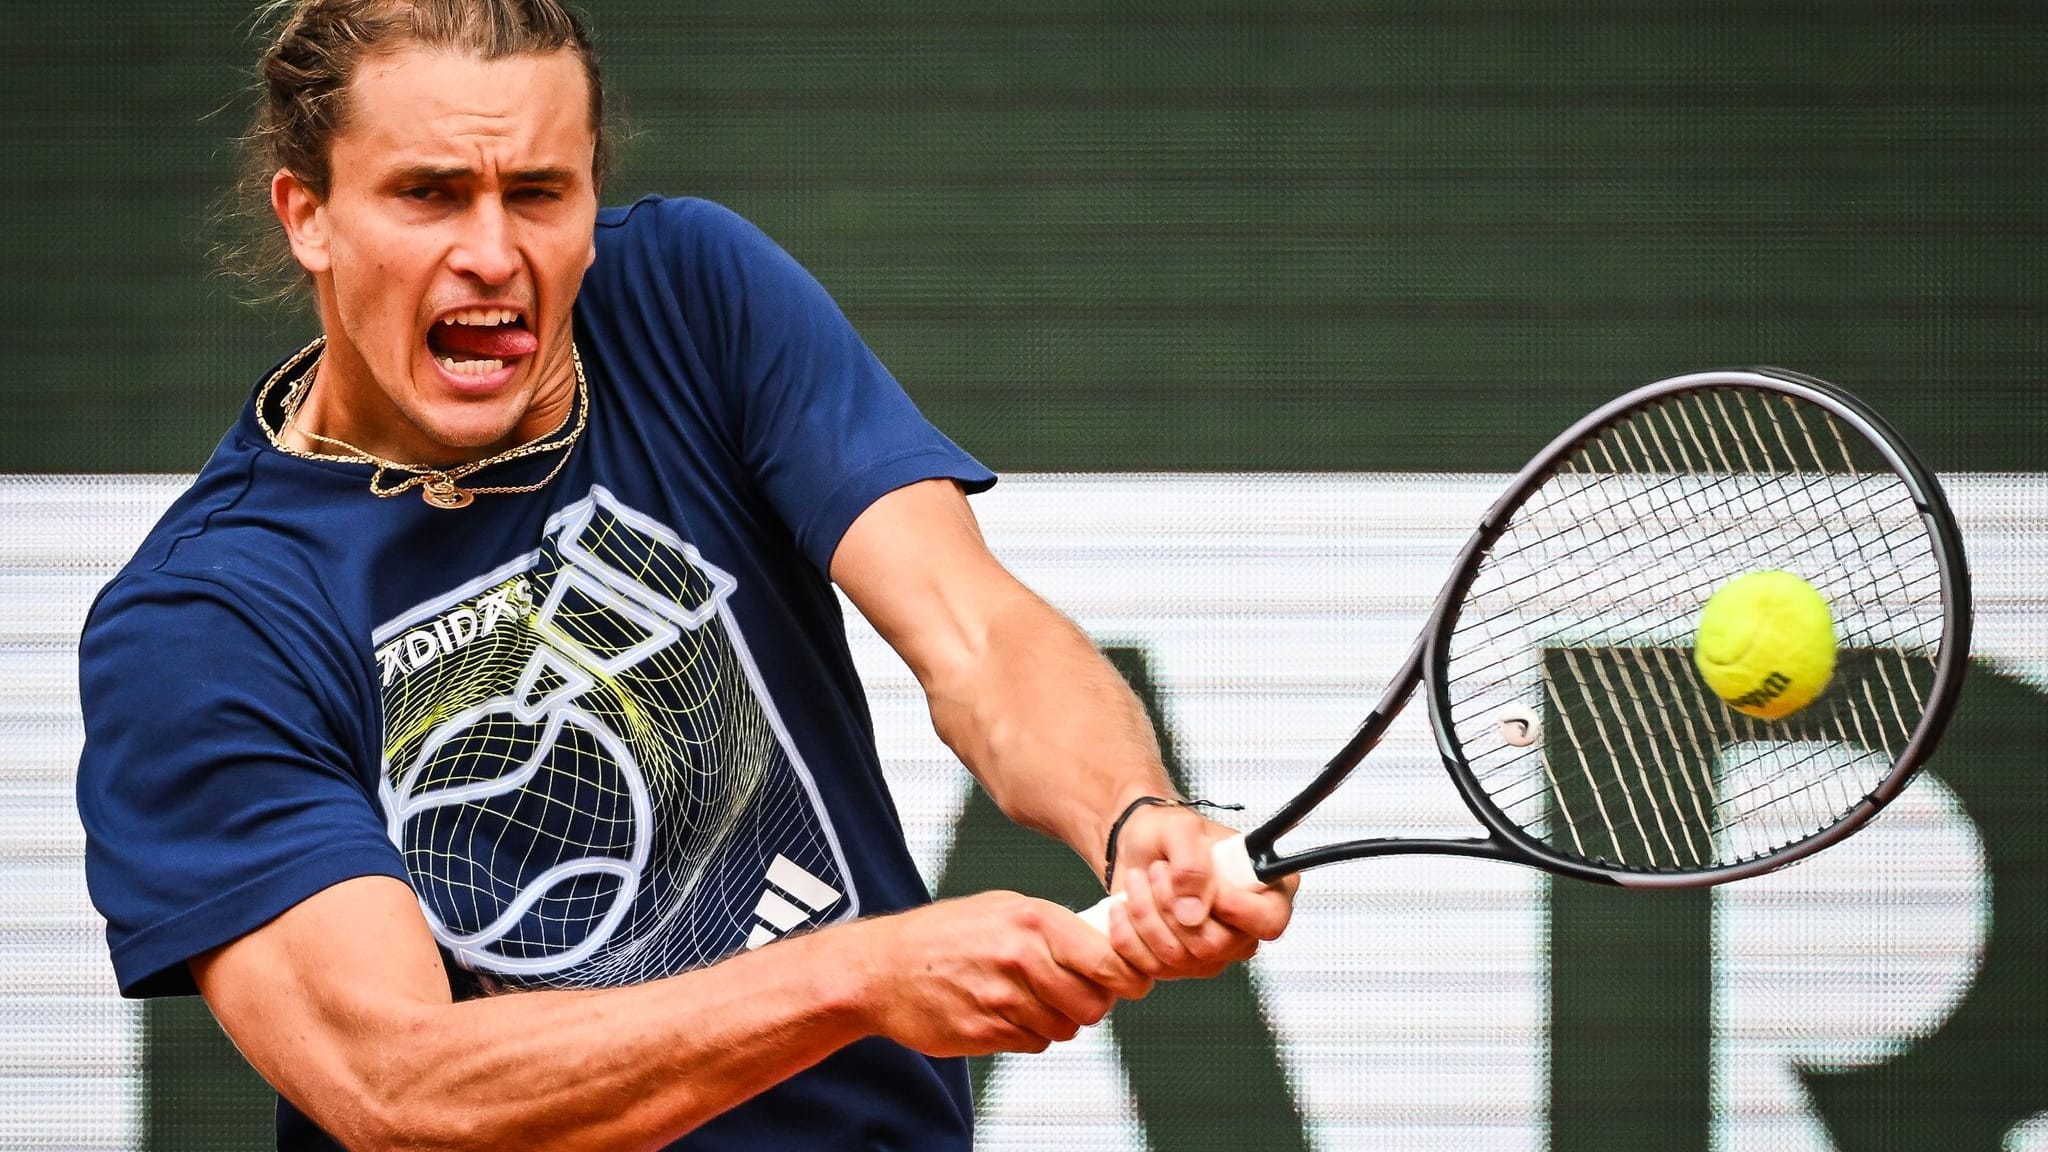 Erstrunden-Knaller in Paris: Zverev trifft auf Nadal